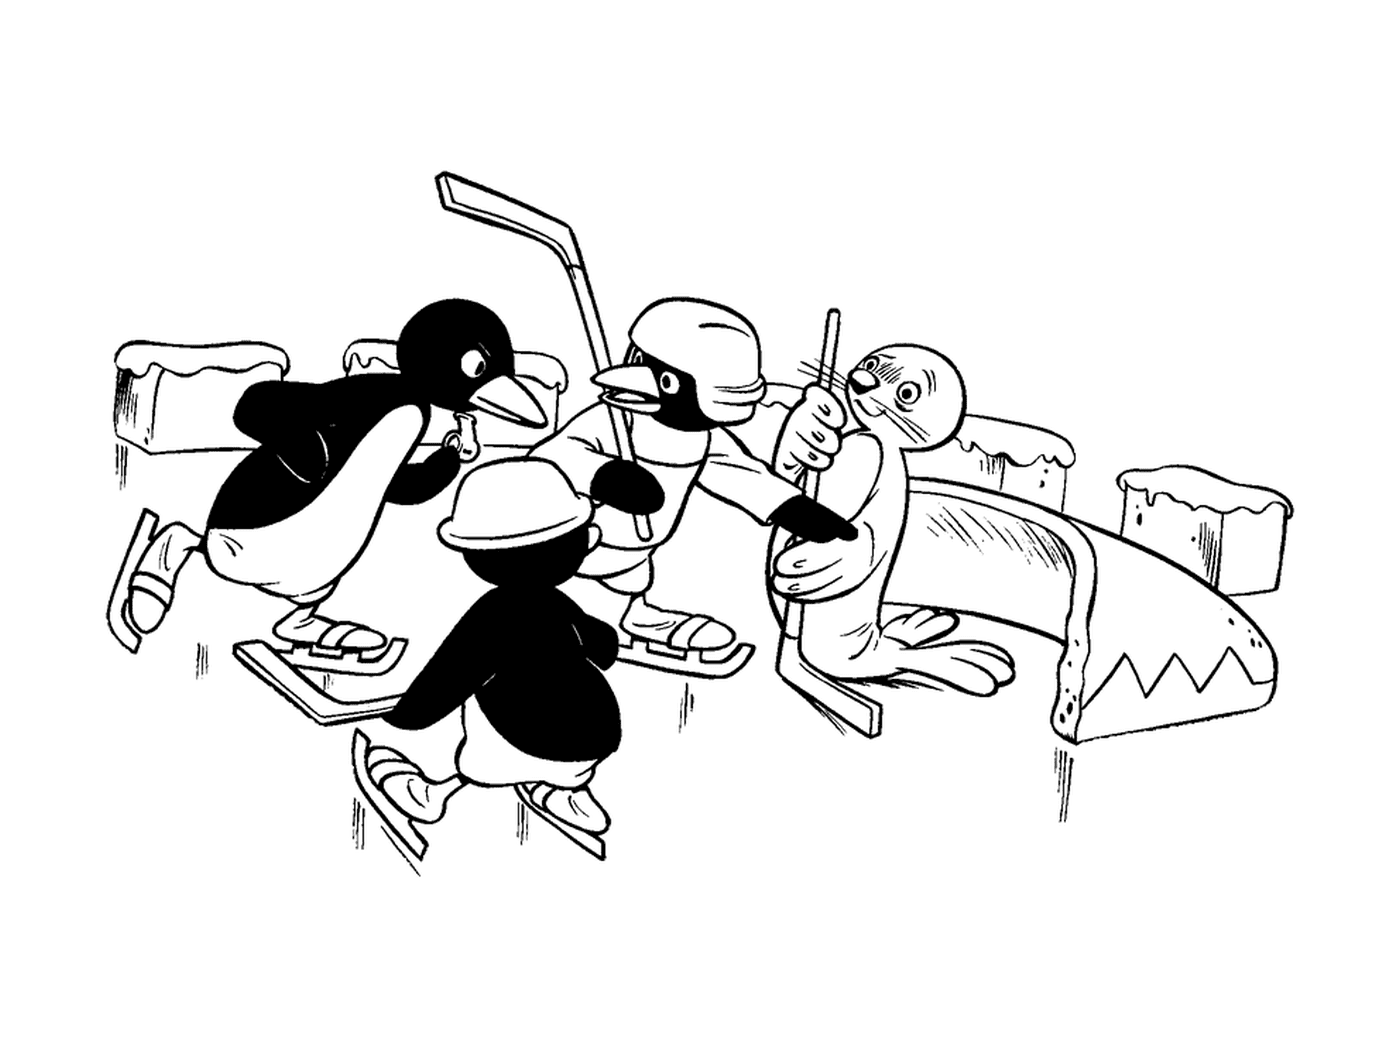  Pingu juega hockey con sus amigos 